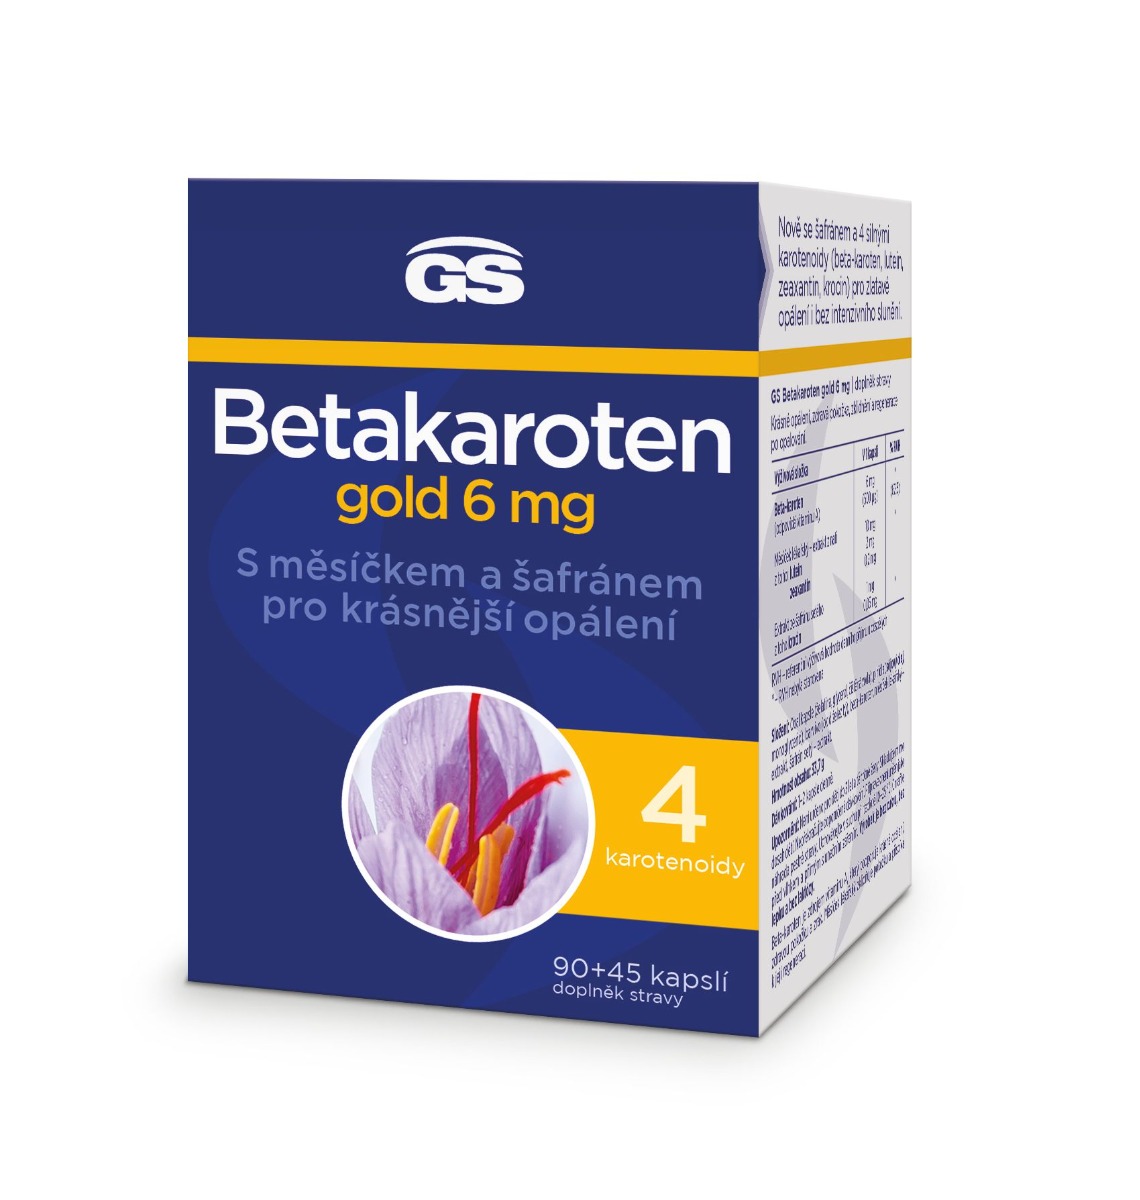 GS Betakaroten gold 6 mg 90+45 kapslí GS